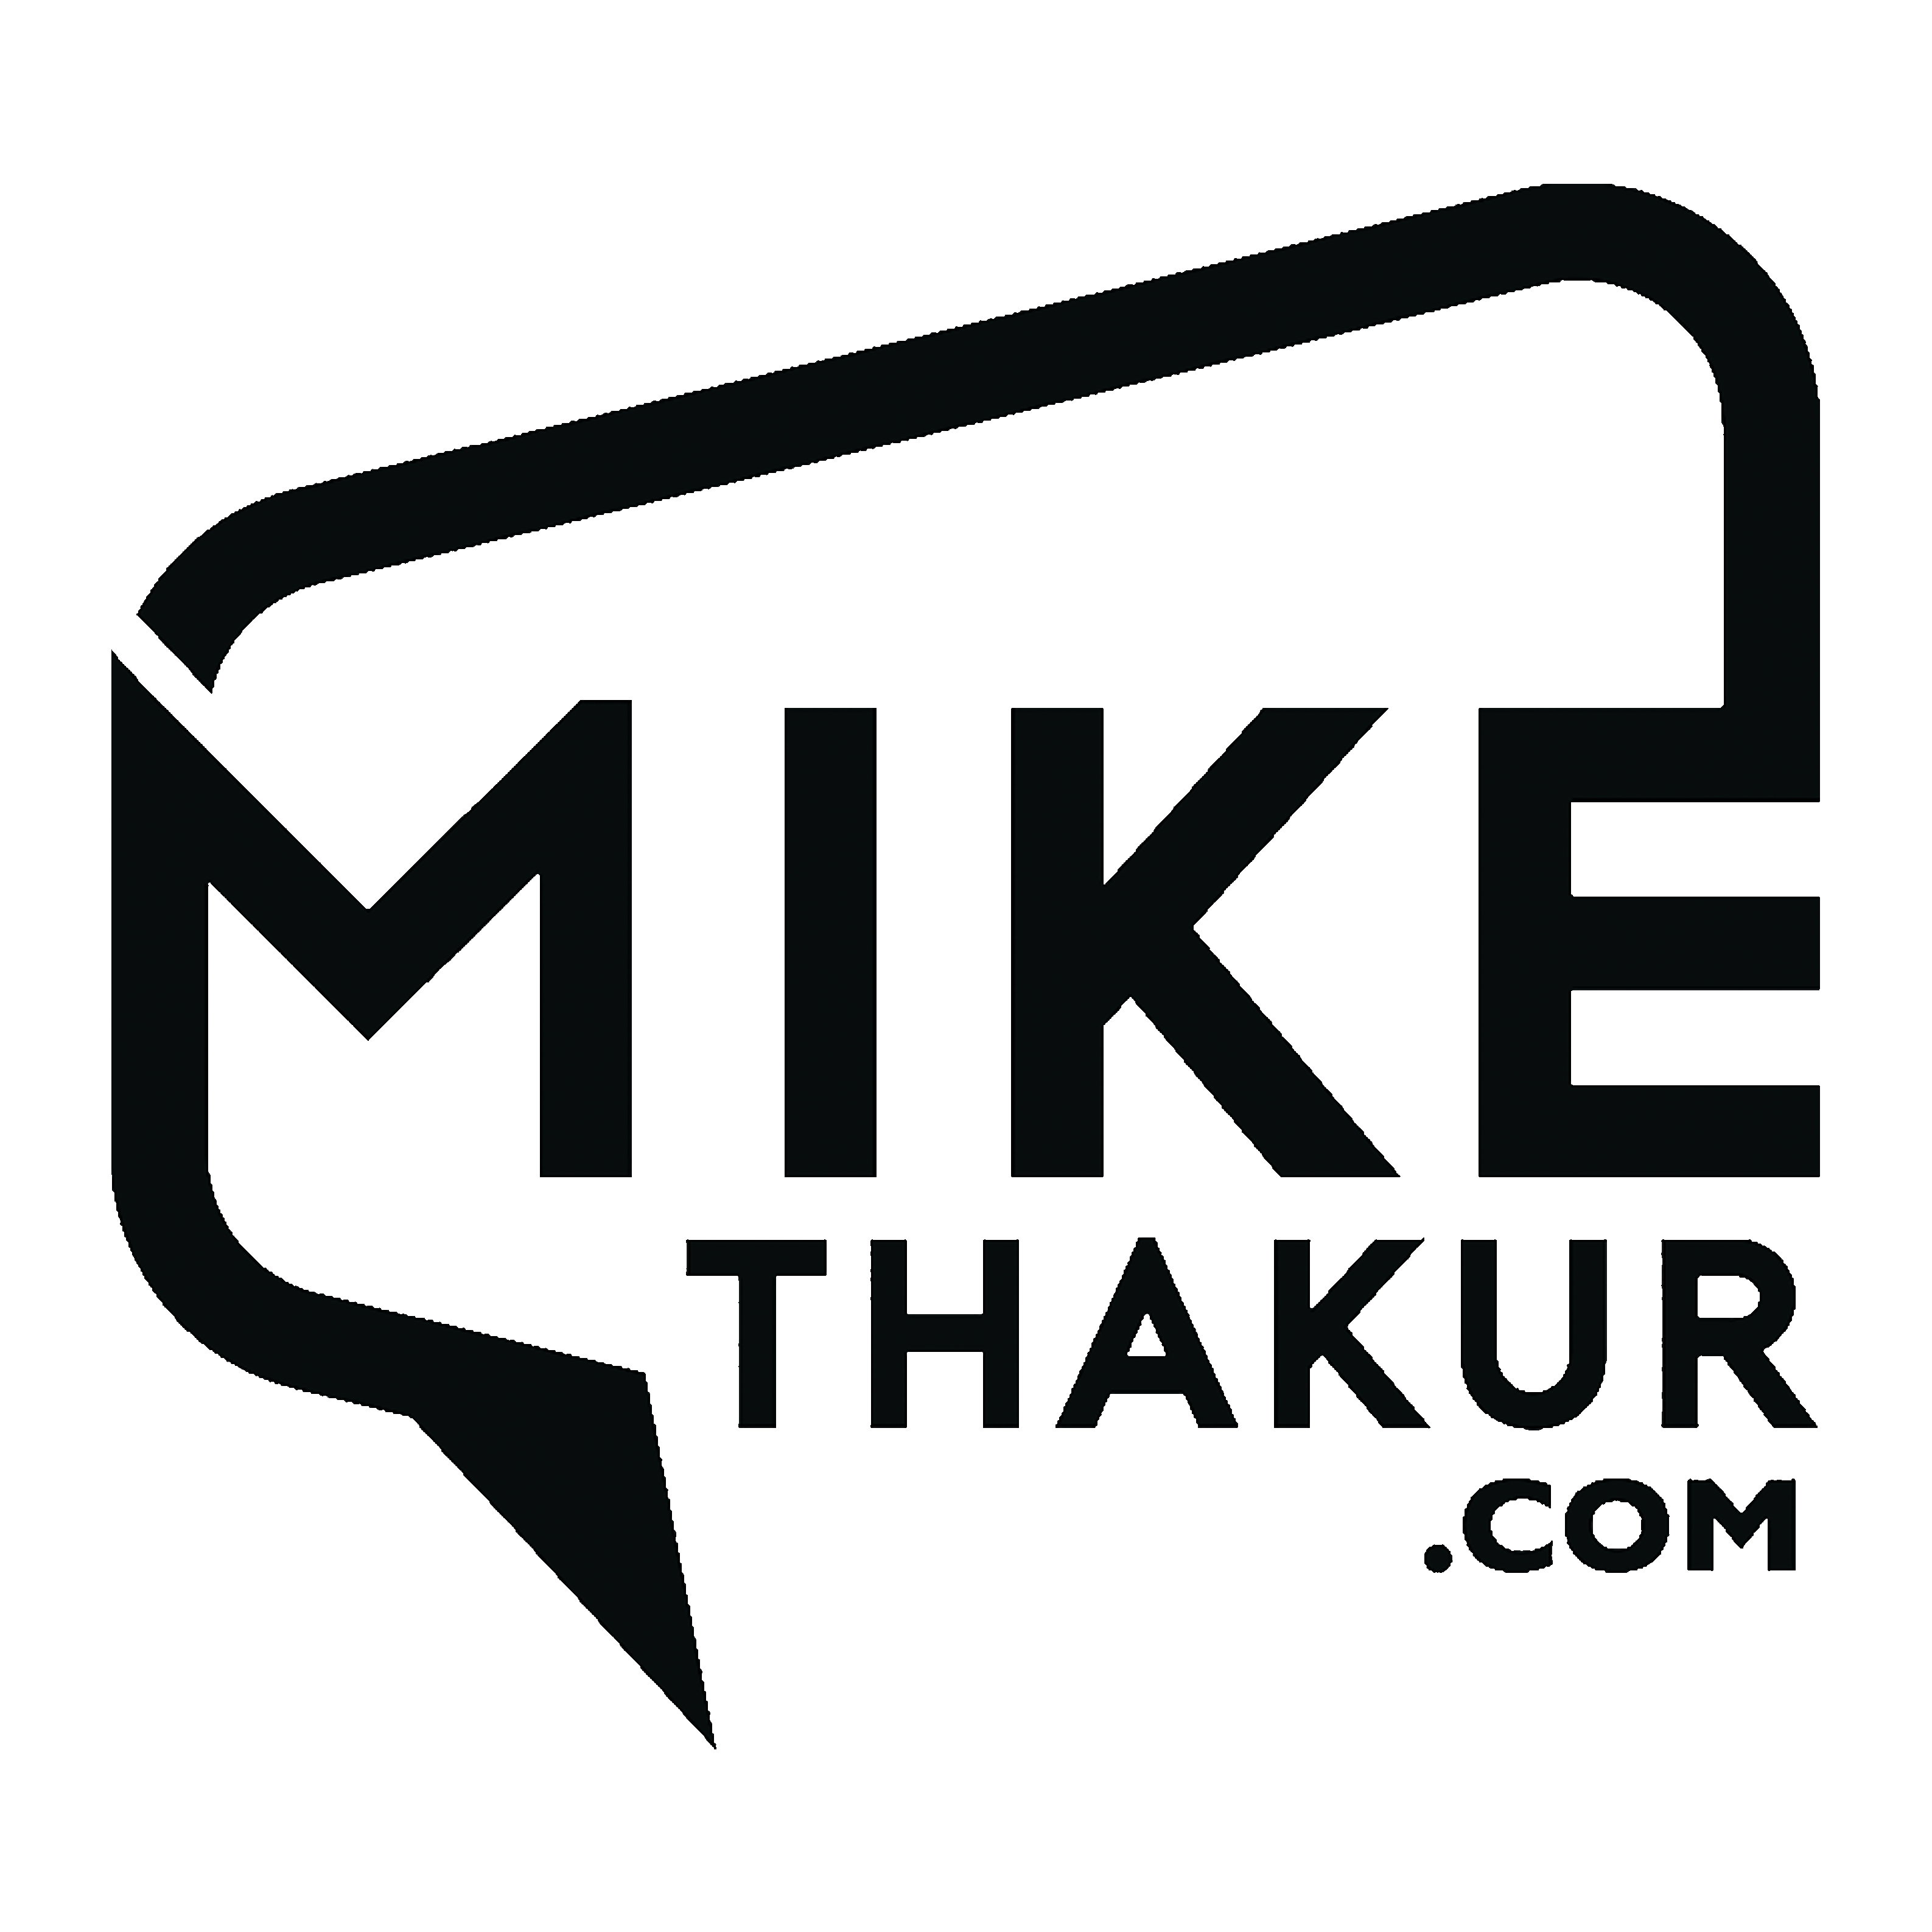 uw-logo-2022-thakur